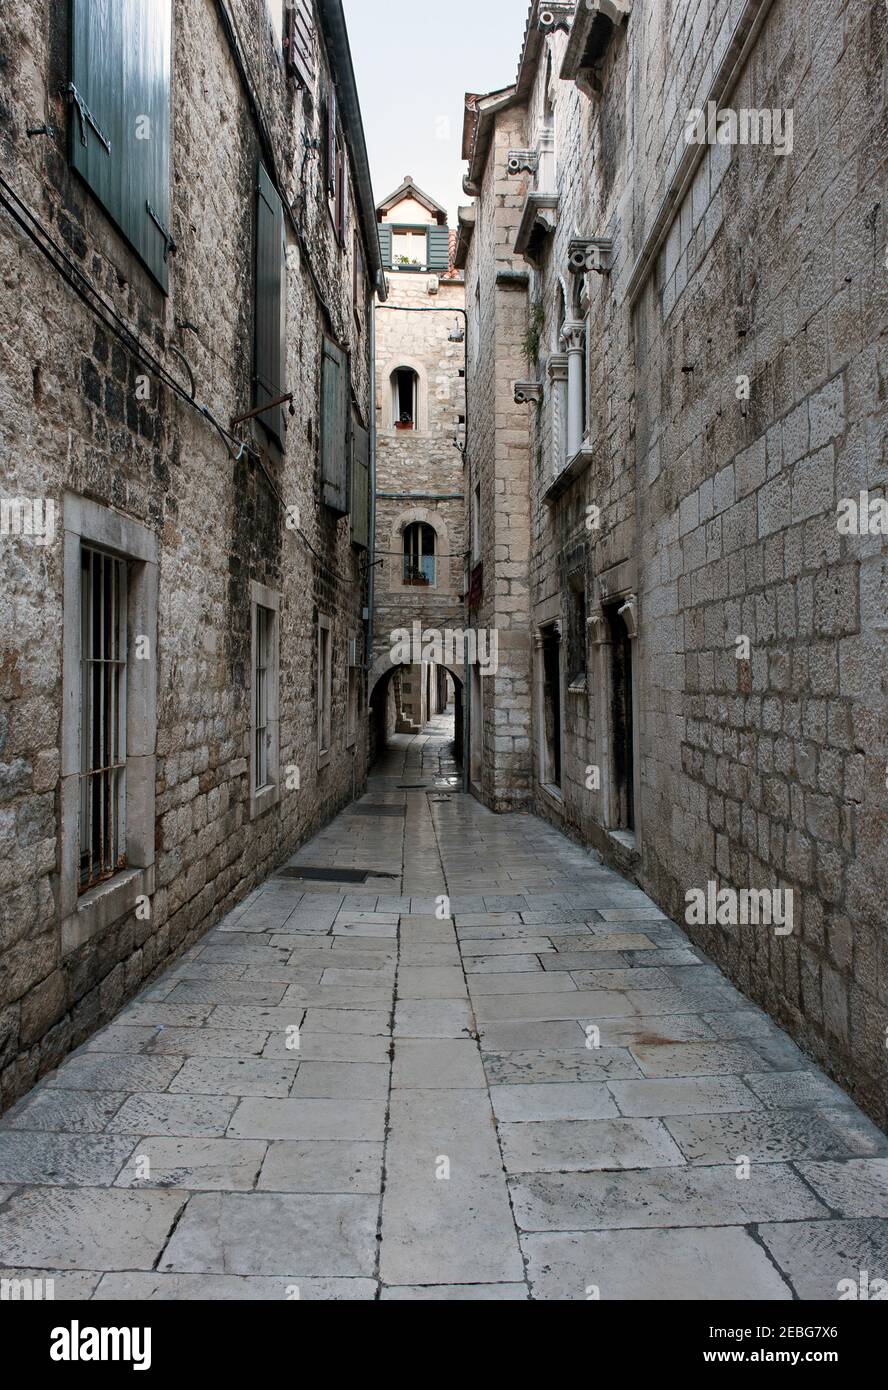 Split - Croate, 25 août 2018: Split, Croatie - rue avec maisons traditionnelles en pierre, construit au XVIIe siècle, comme lieu de tournage de la télévision Banque D'Images